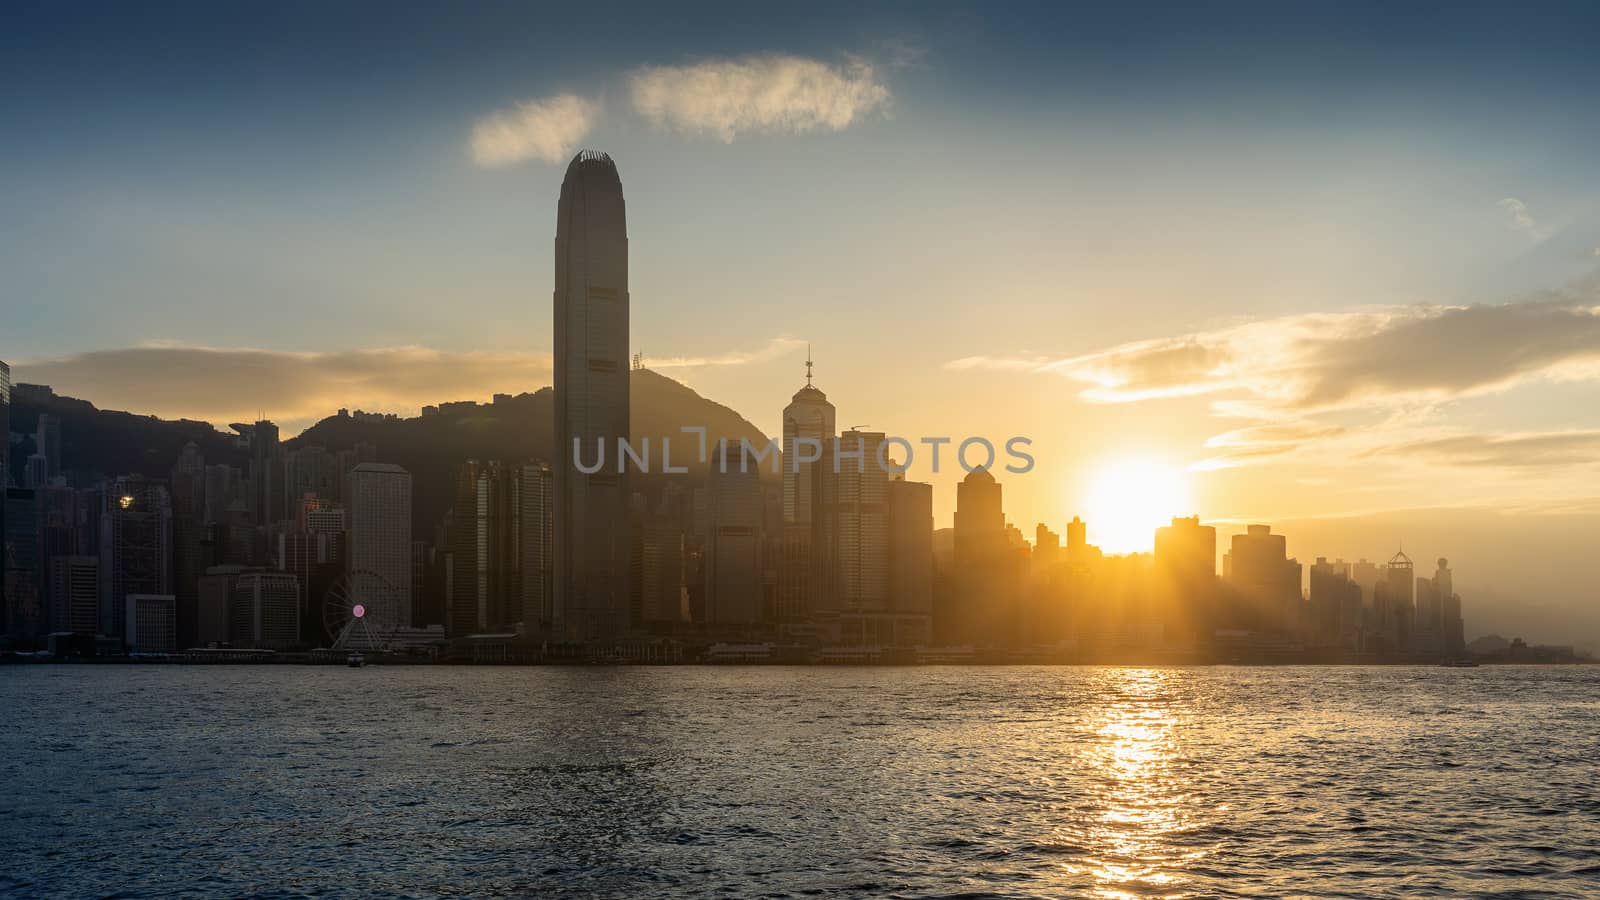 Beautiful sunset at Hong Kong.